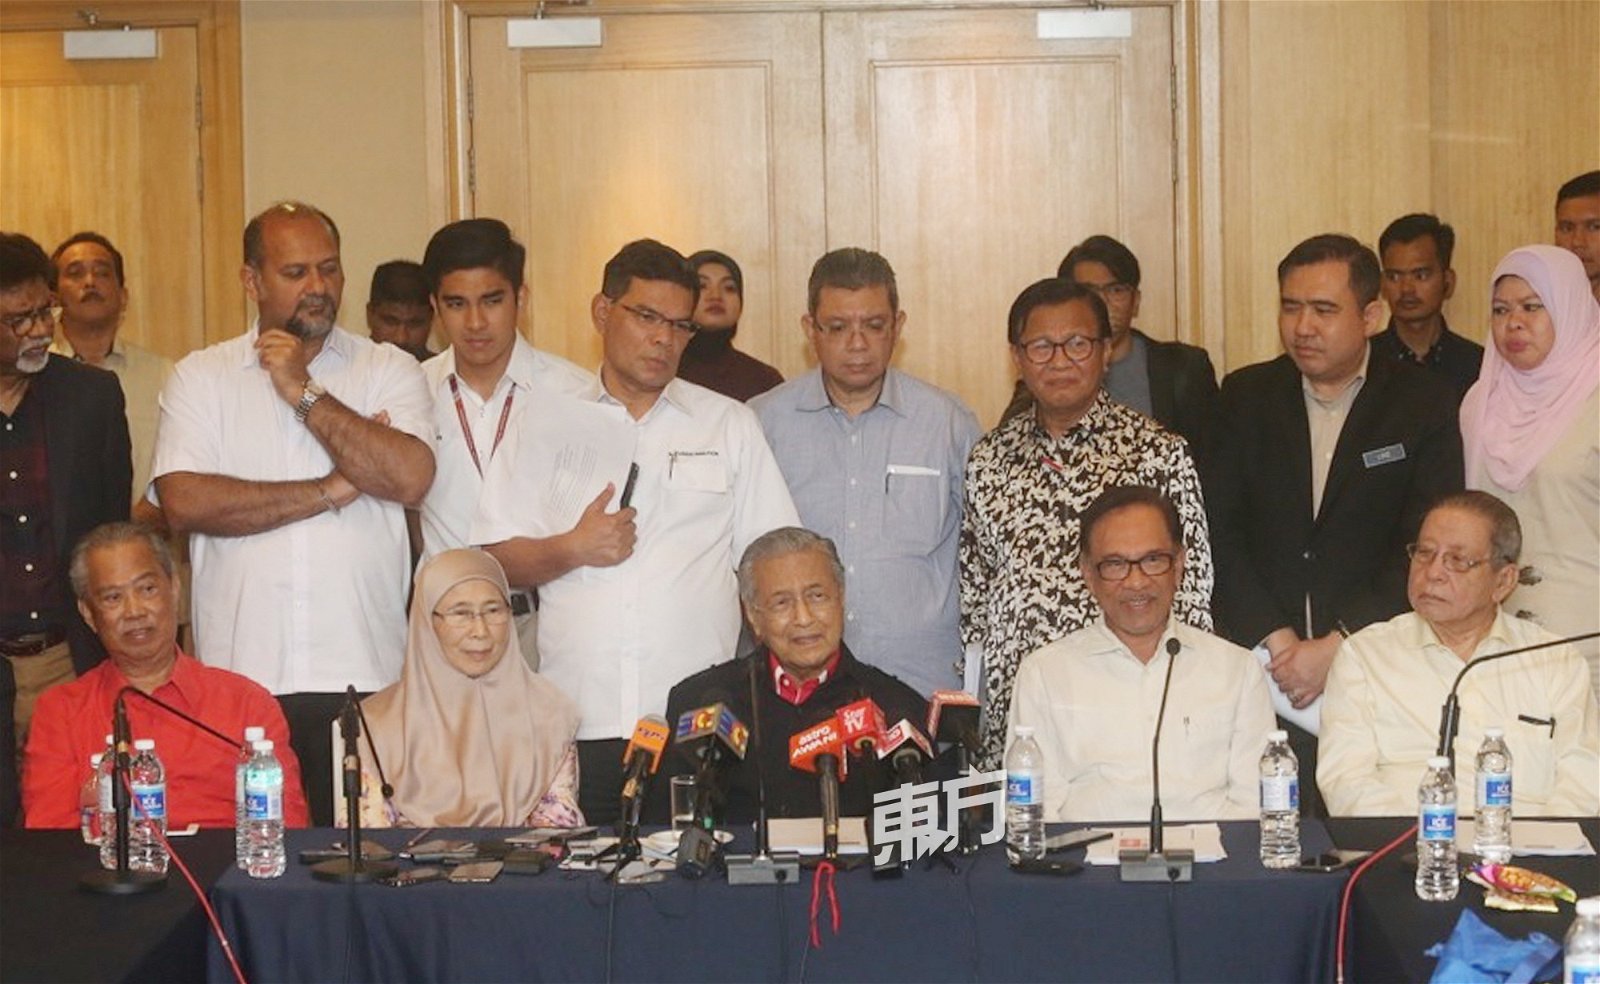 马哈迪（中）主持希盟理事会议后，在一众希盟领袖陪同下，召开 记者会。前排左起为慕尤丁、旺阿兹莎、安华及林吉祥。 （摄影：骆曼）